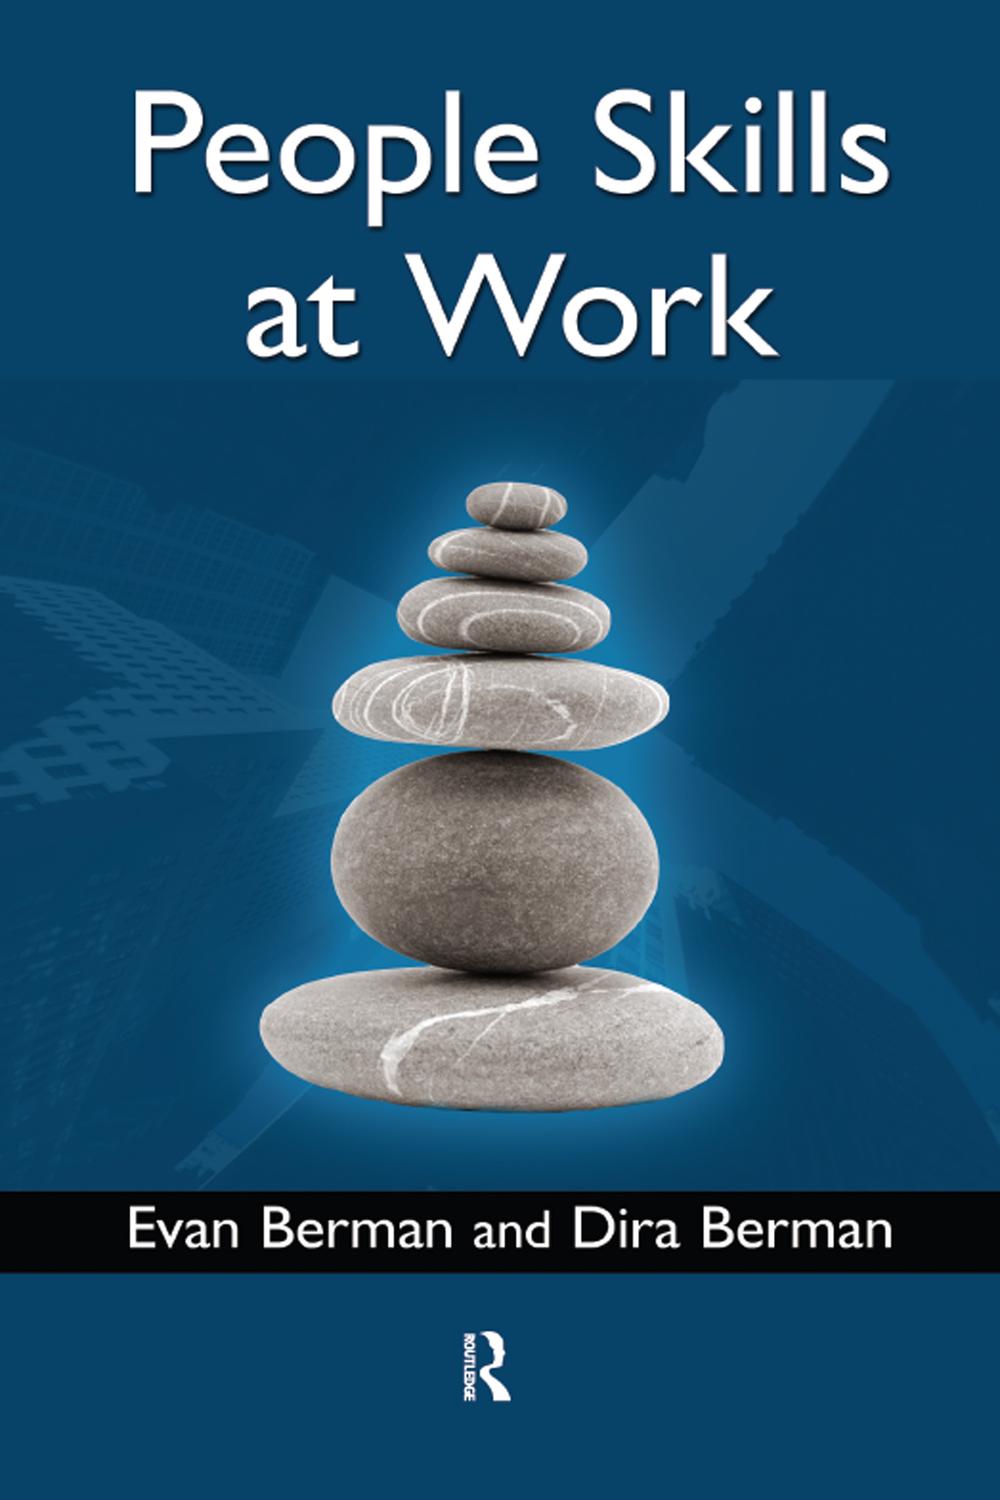 People Skills at Work - Evan Berman, Dira Berman